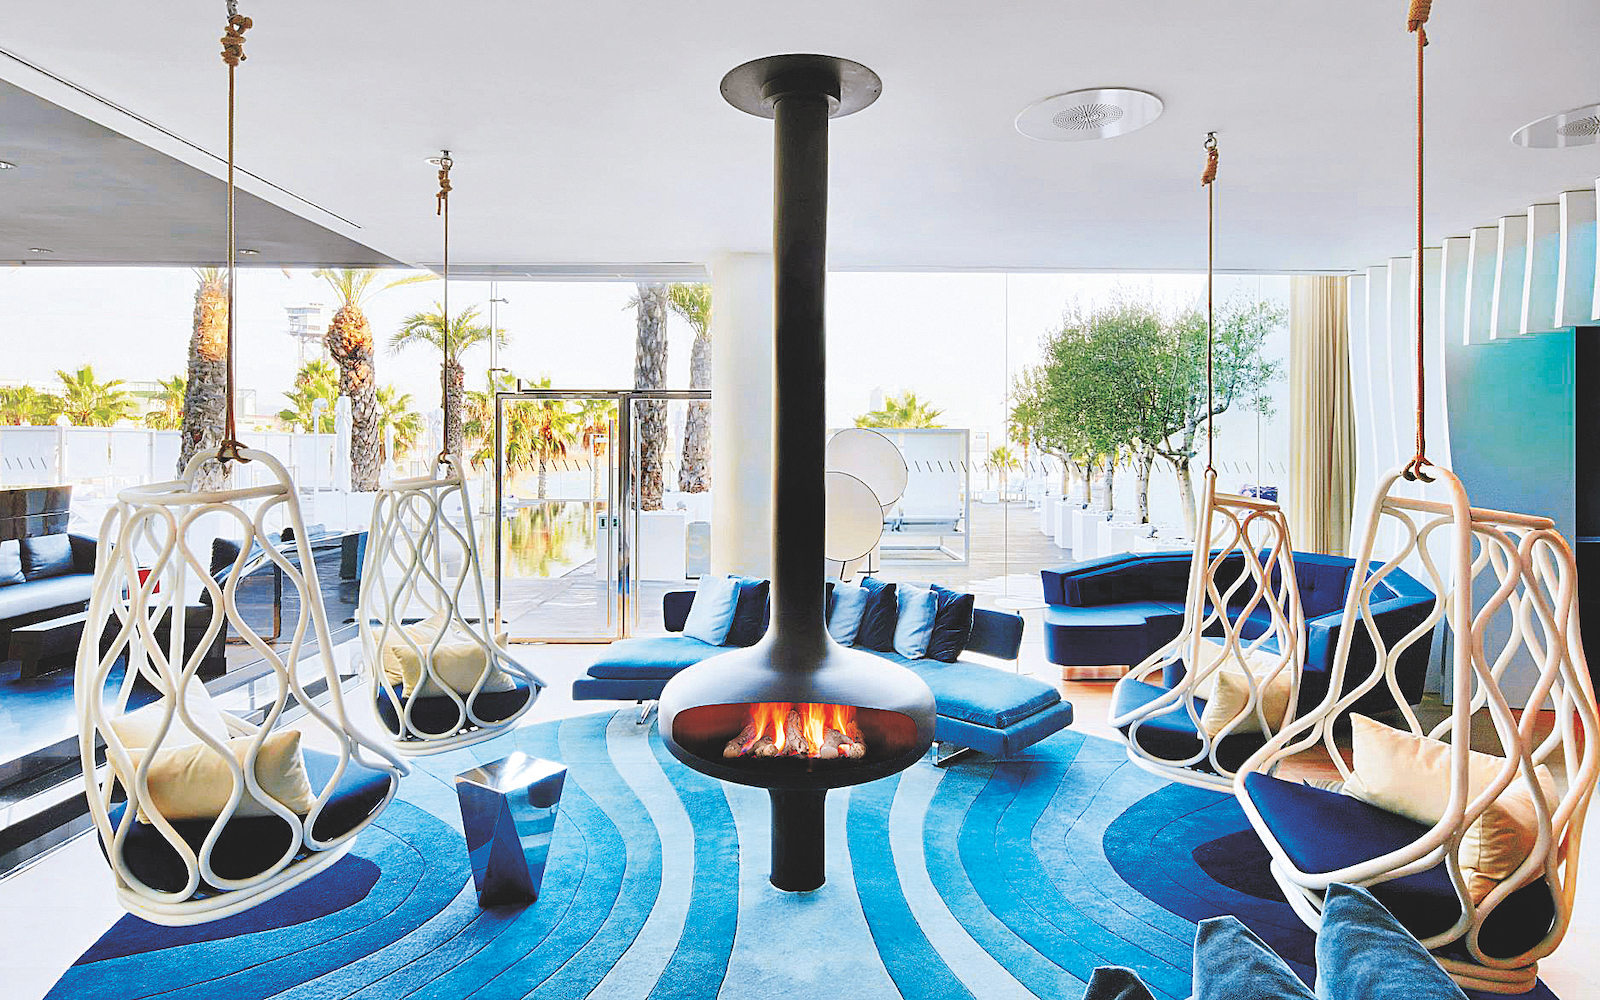 Magmafocus Focus Fireplaces in blue interior design scheme